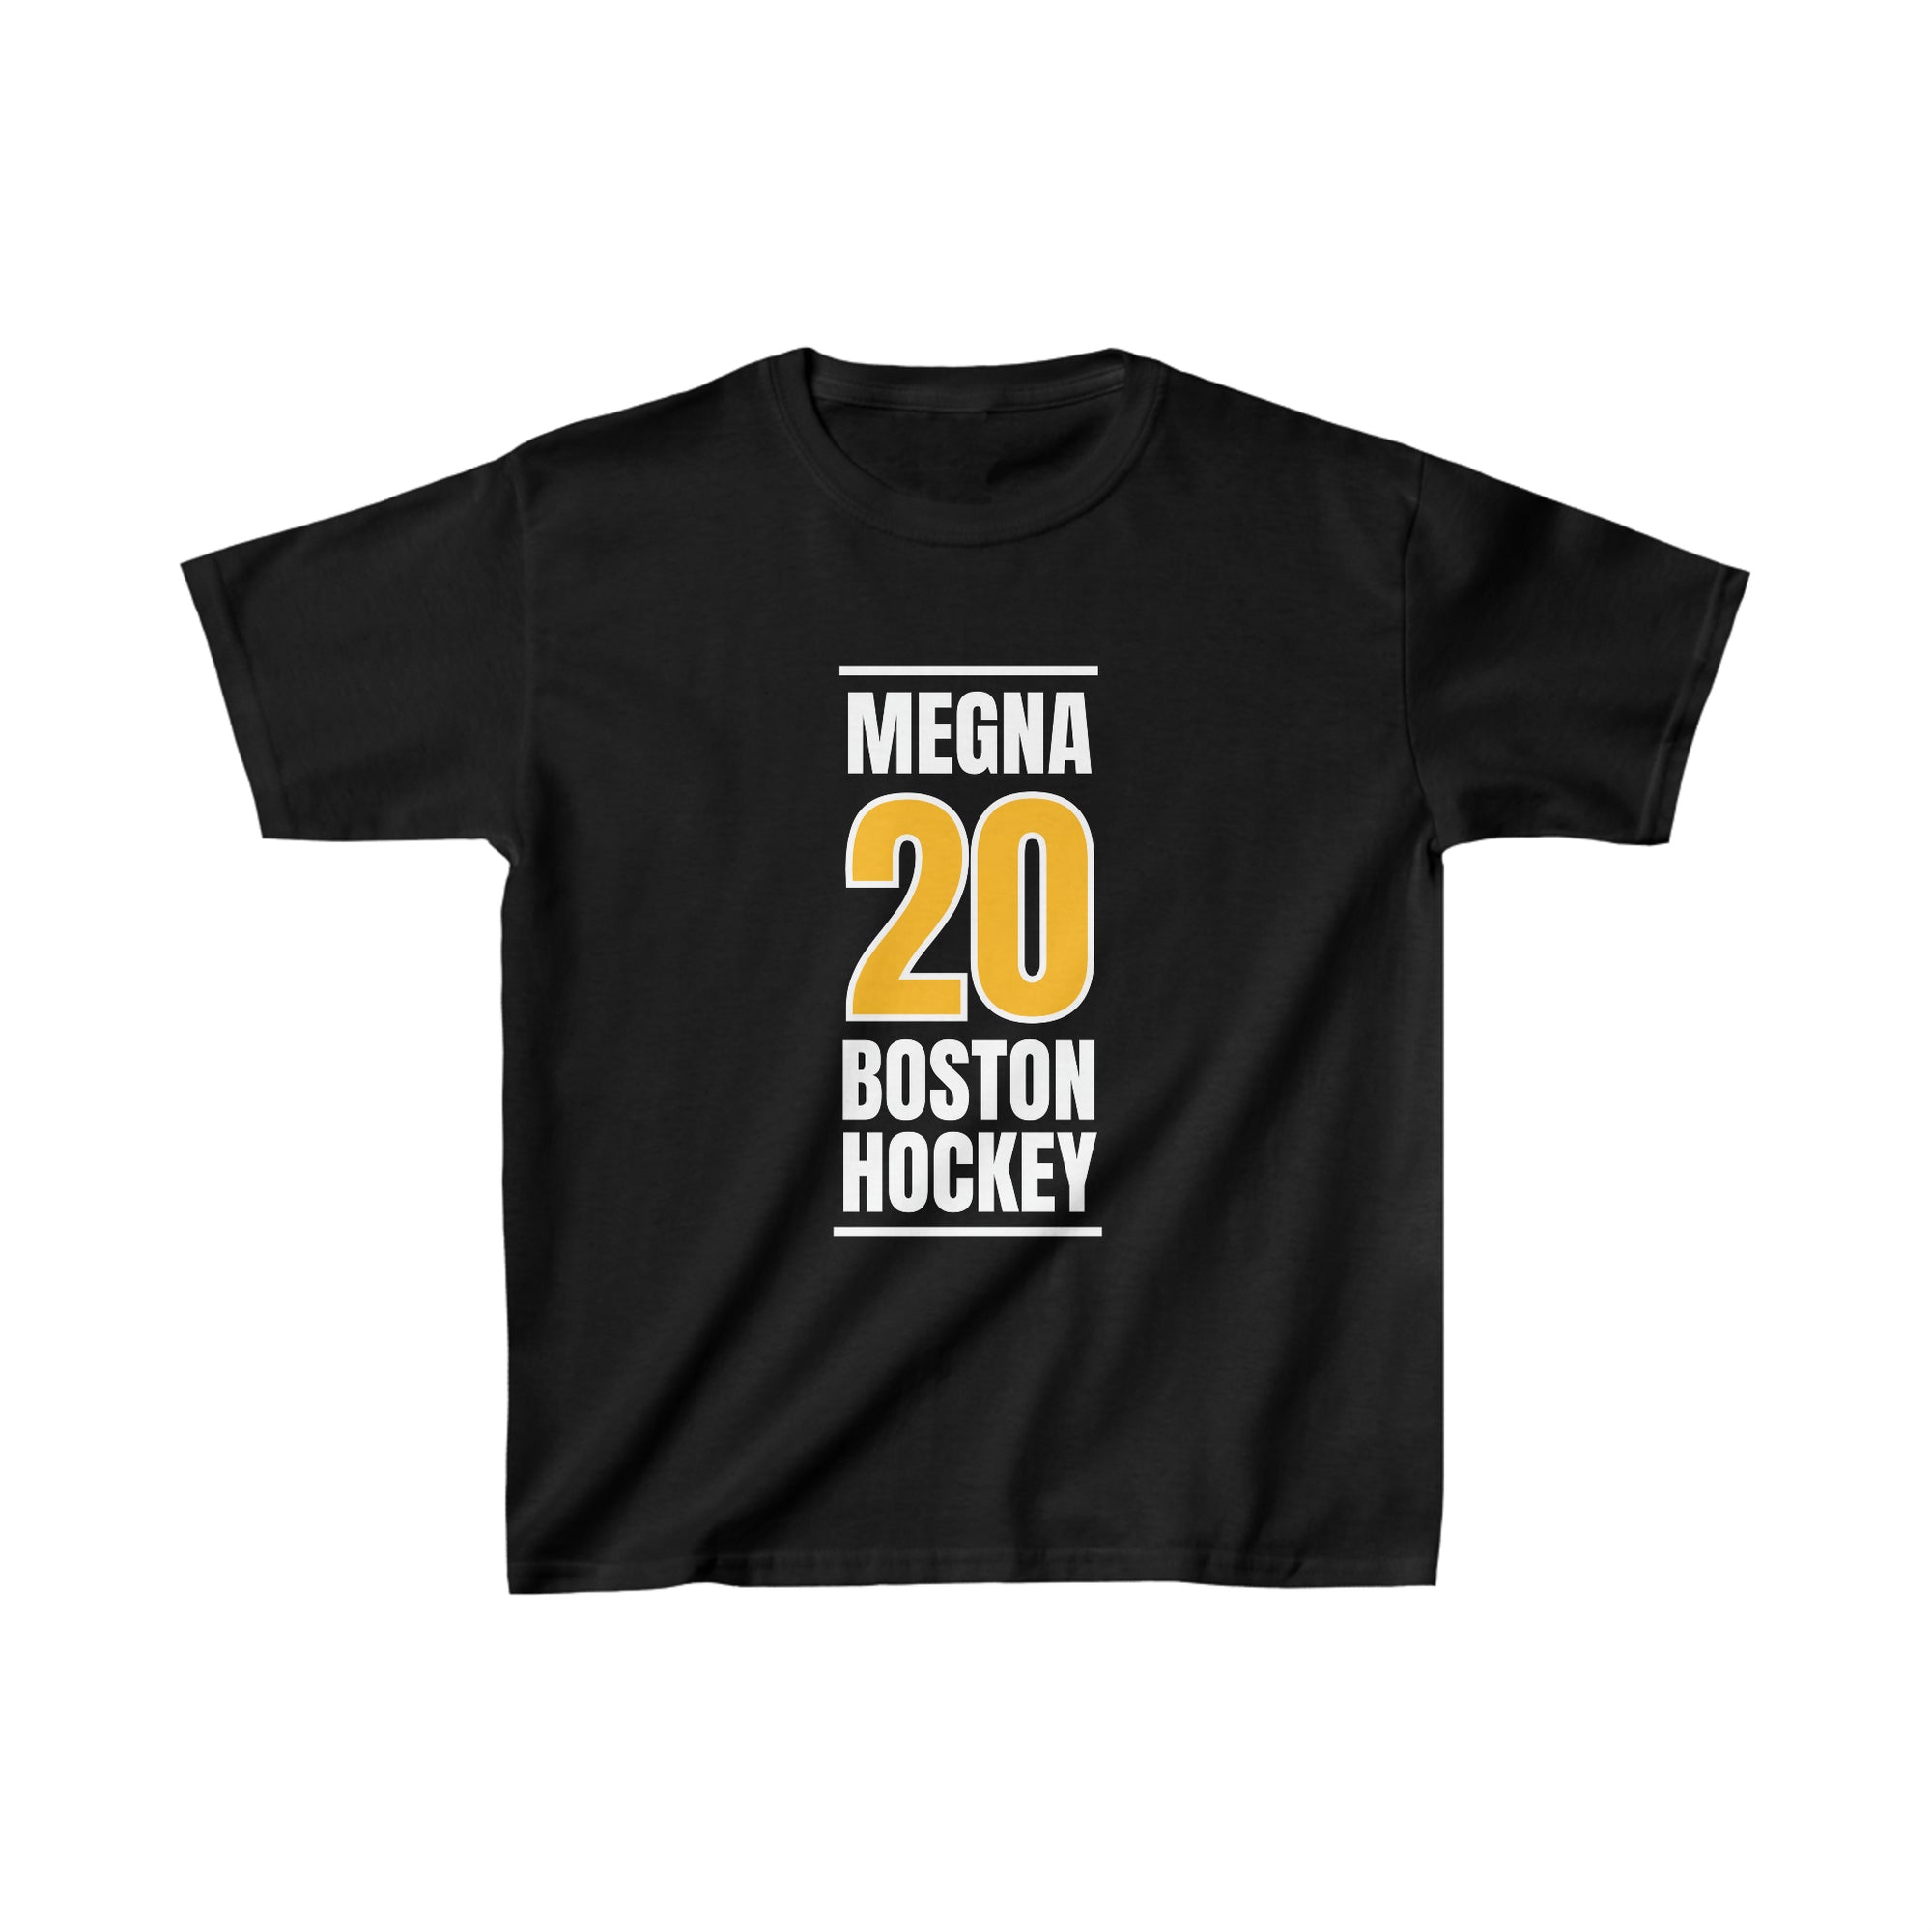 Megna 20 Boston Hockey Gold Vertical Design Kids Tee